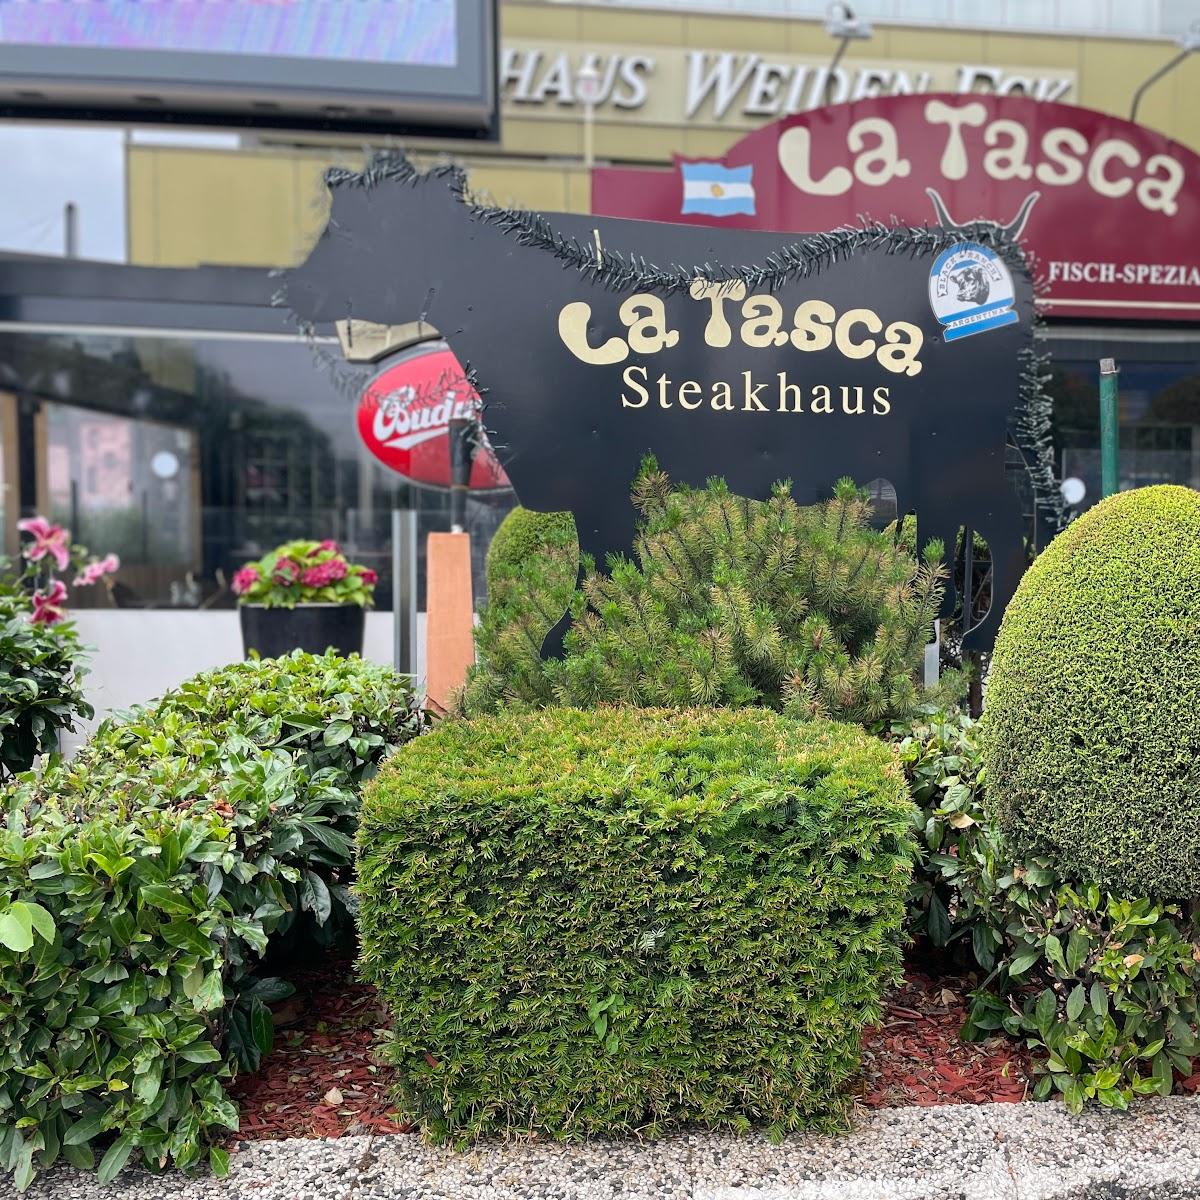 Restaurant "La Tasca" in Köln